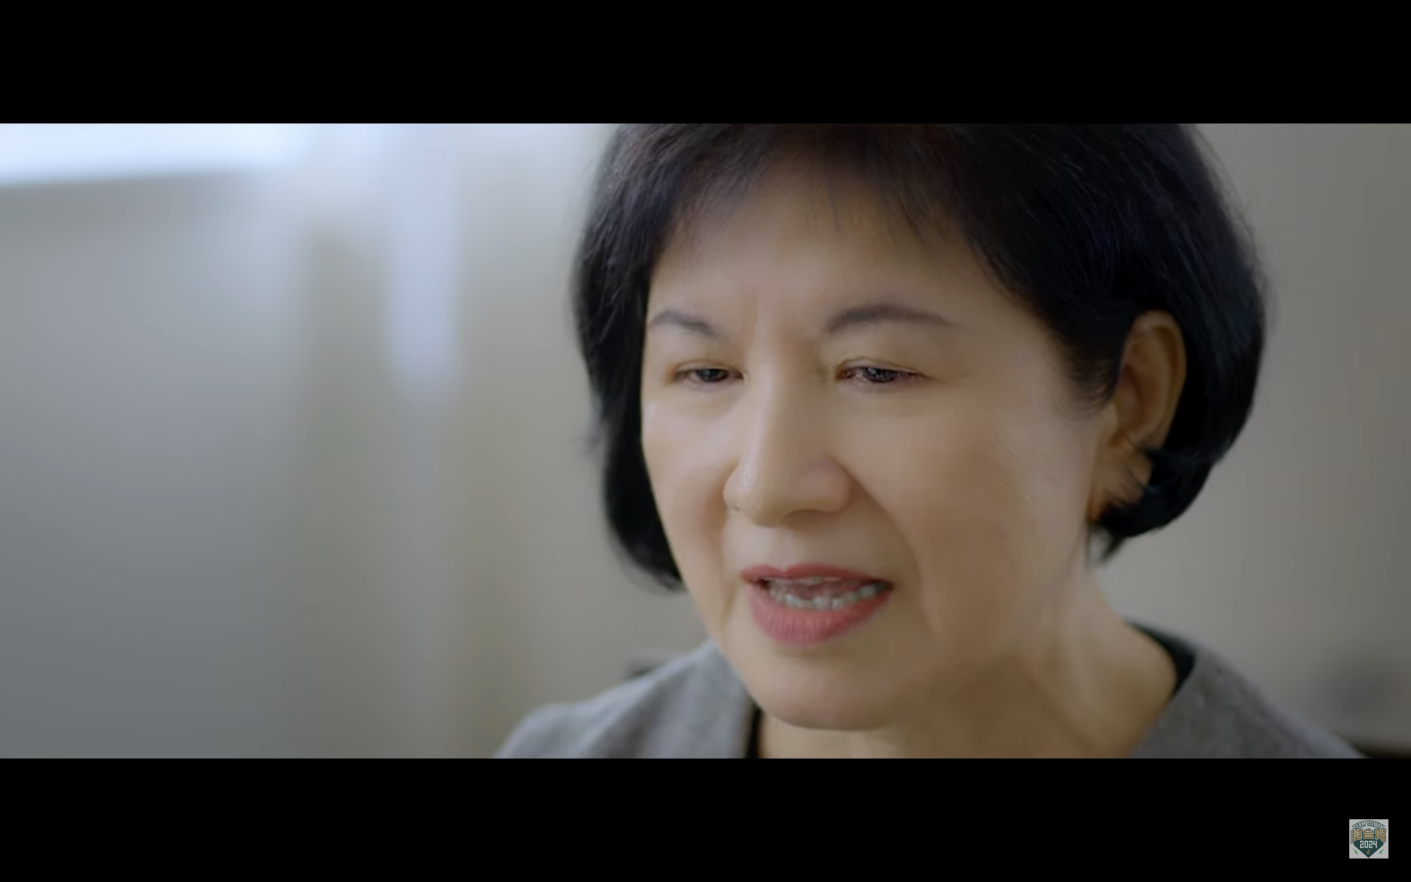 民進黨總統候選人賴清德夫人吳玫如首度露面拍攝競選影片。翻攝畫面